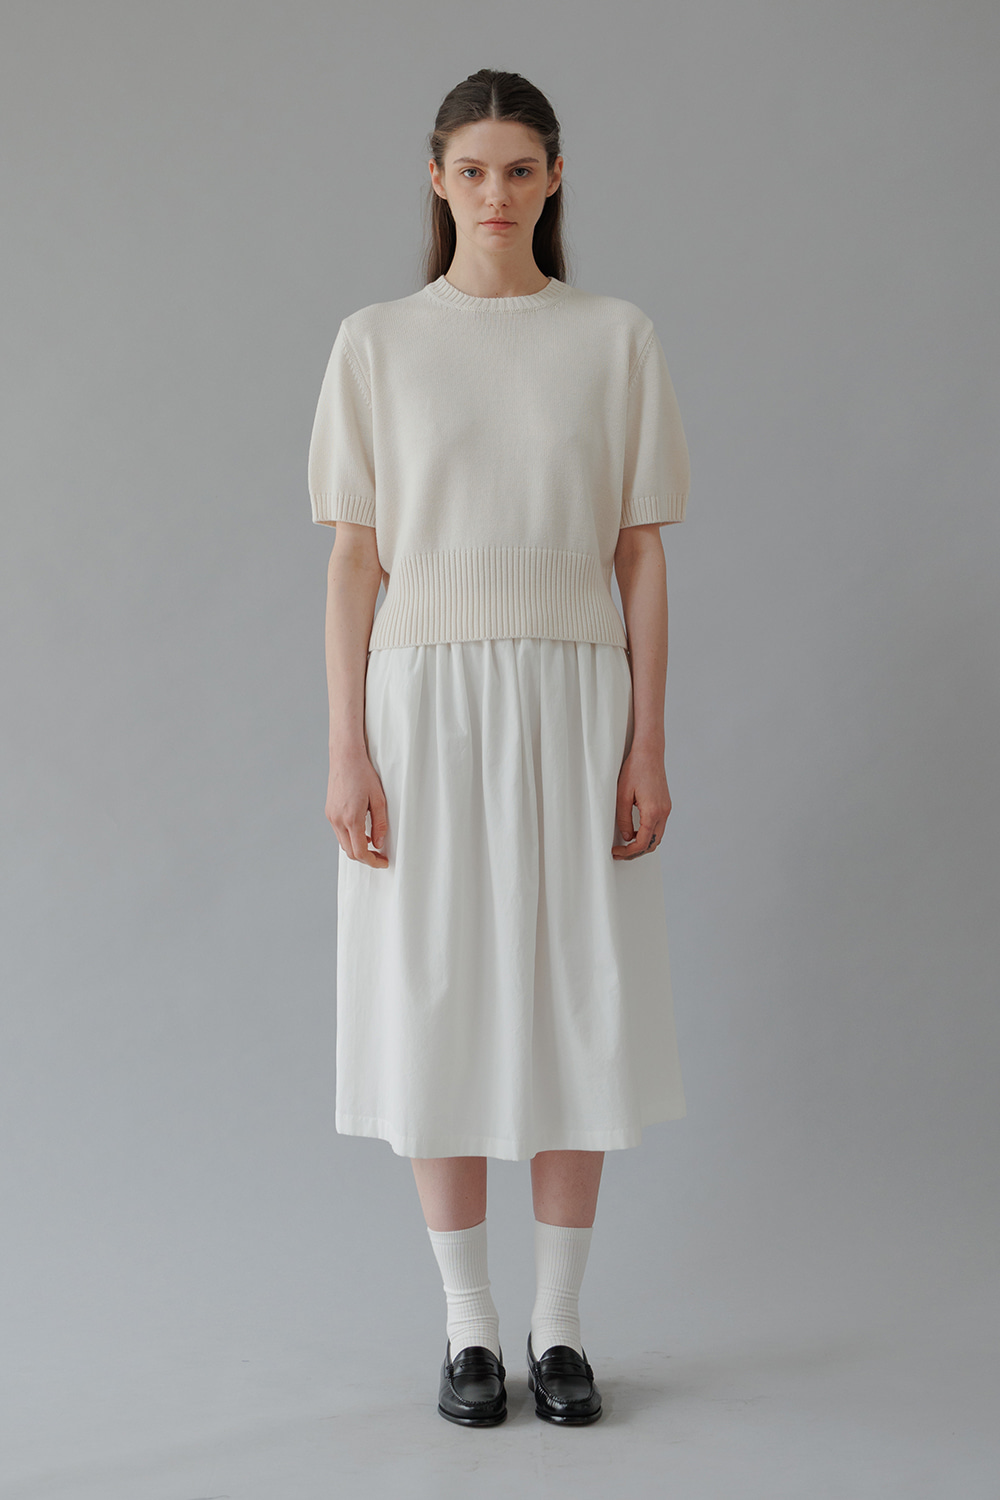 Lulu Cotton Knit(White)